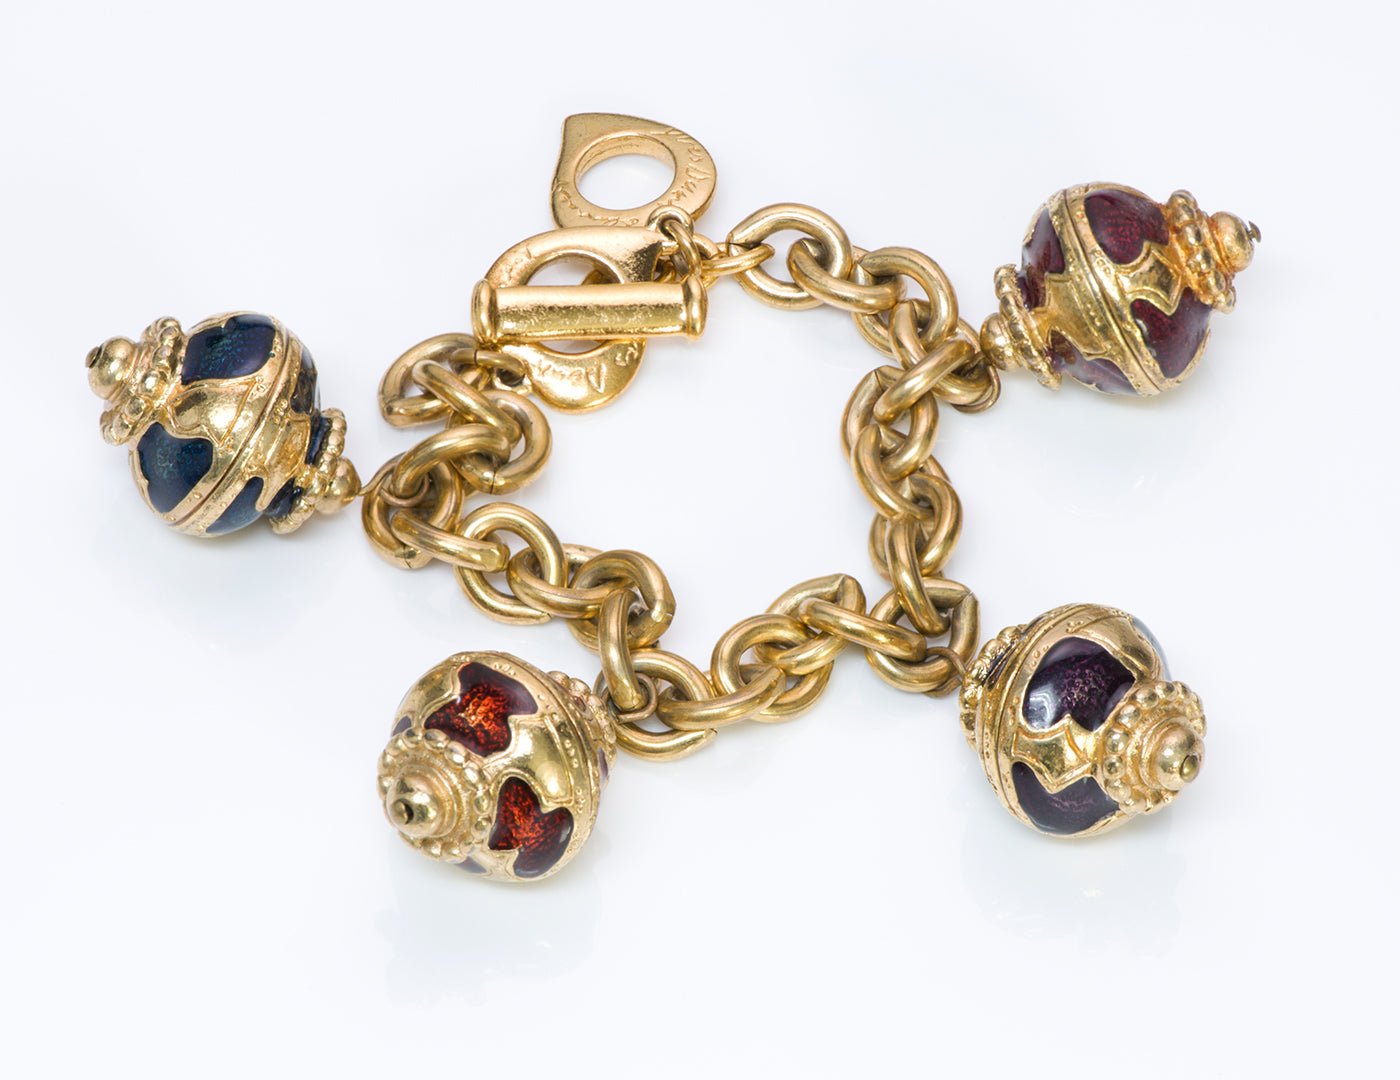 YSL Yves Saint Laurent Gold Tone Enamel Charm Bracelet